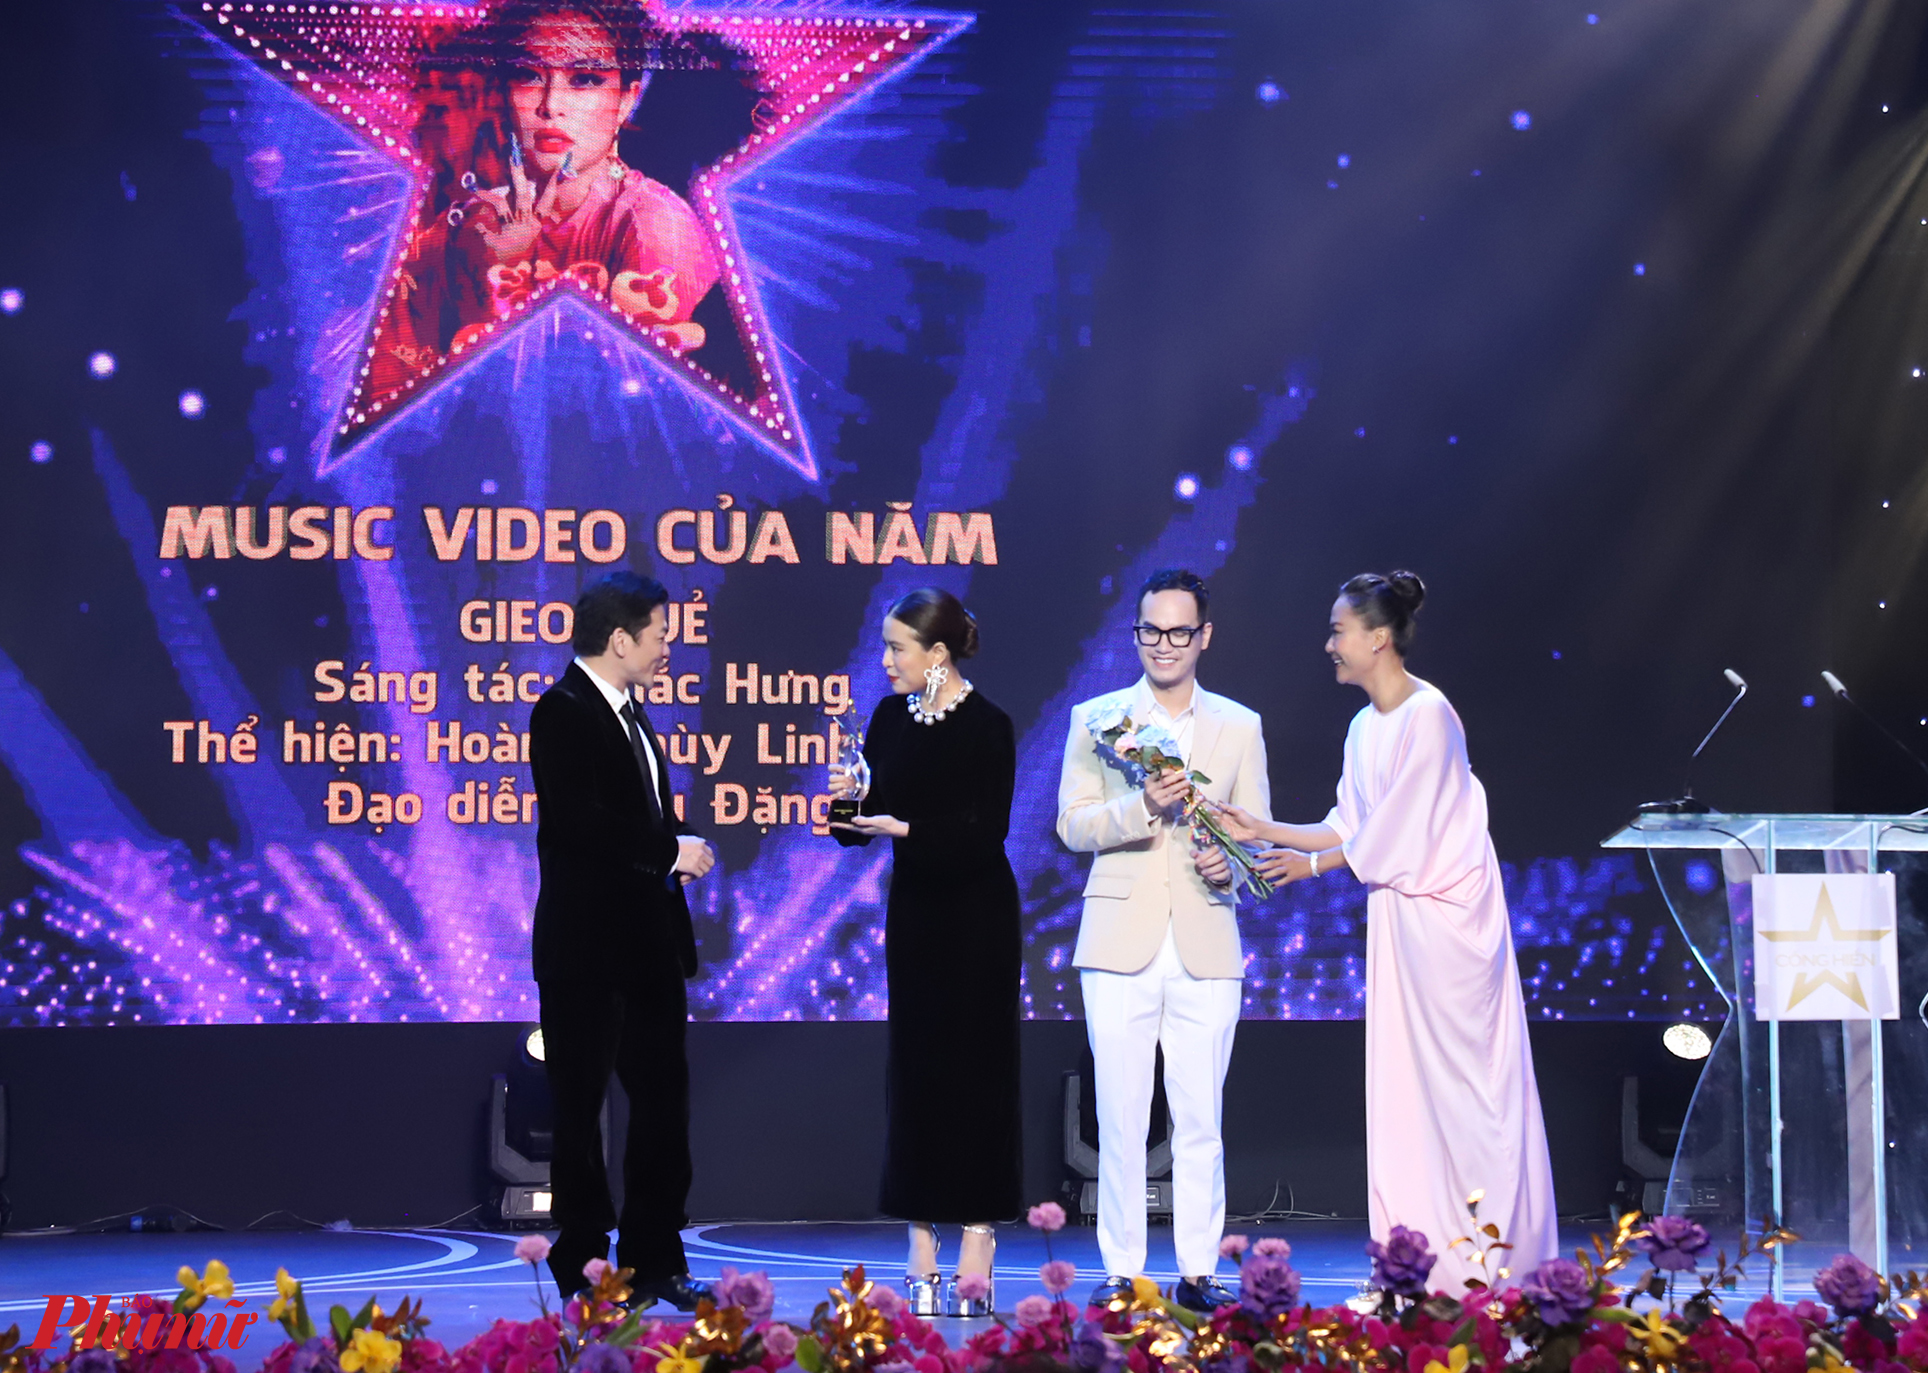 Hoàng Thuỳ Linh cùng nhạc sĩ Khắc Hưng nhận giải MV của năm với MV Gieo quẻ